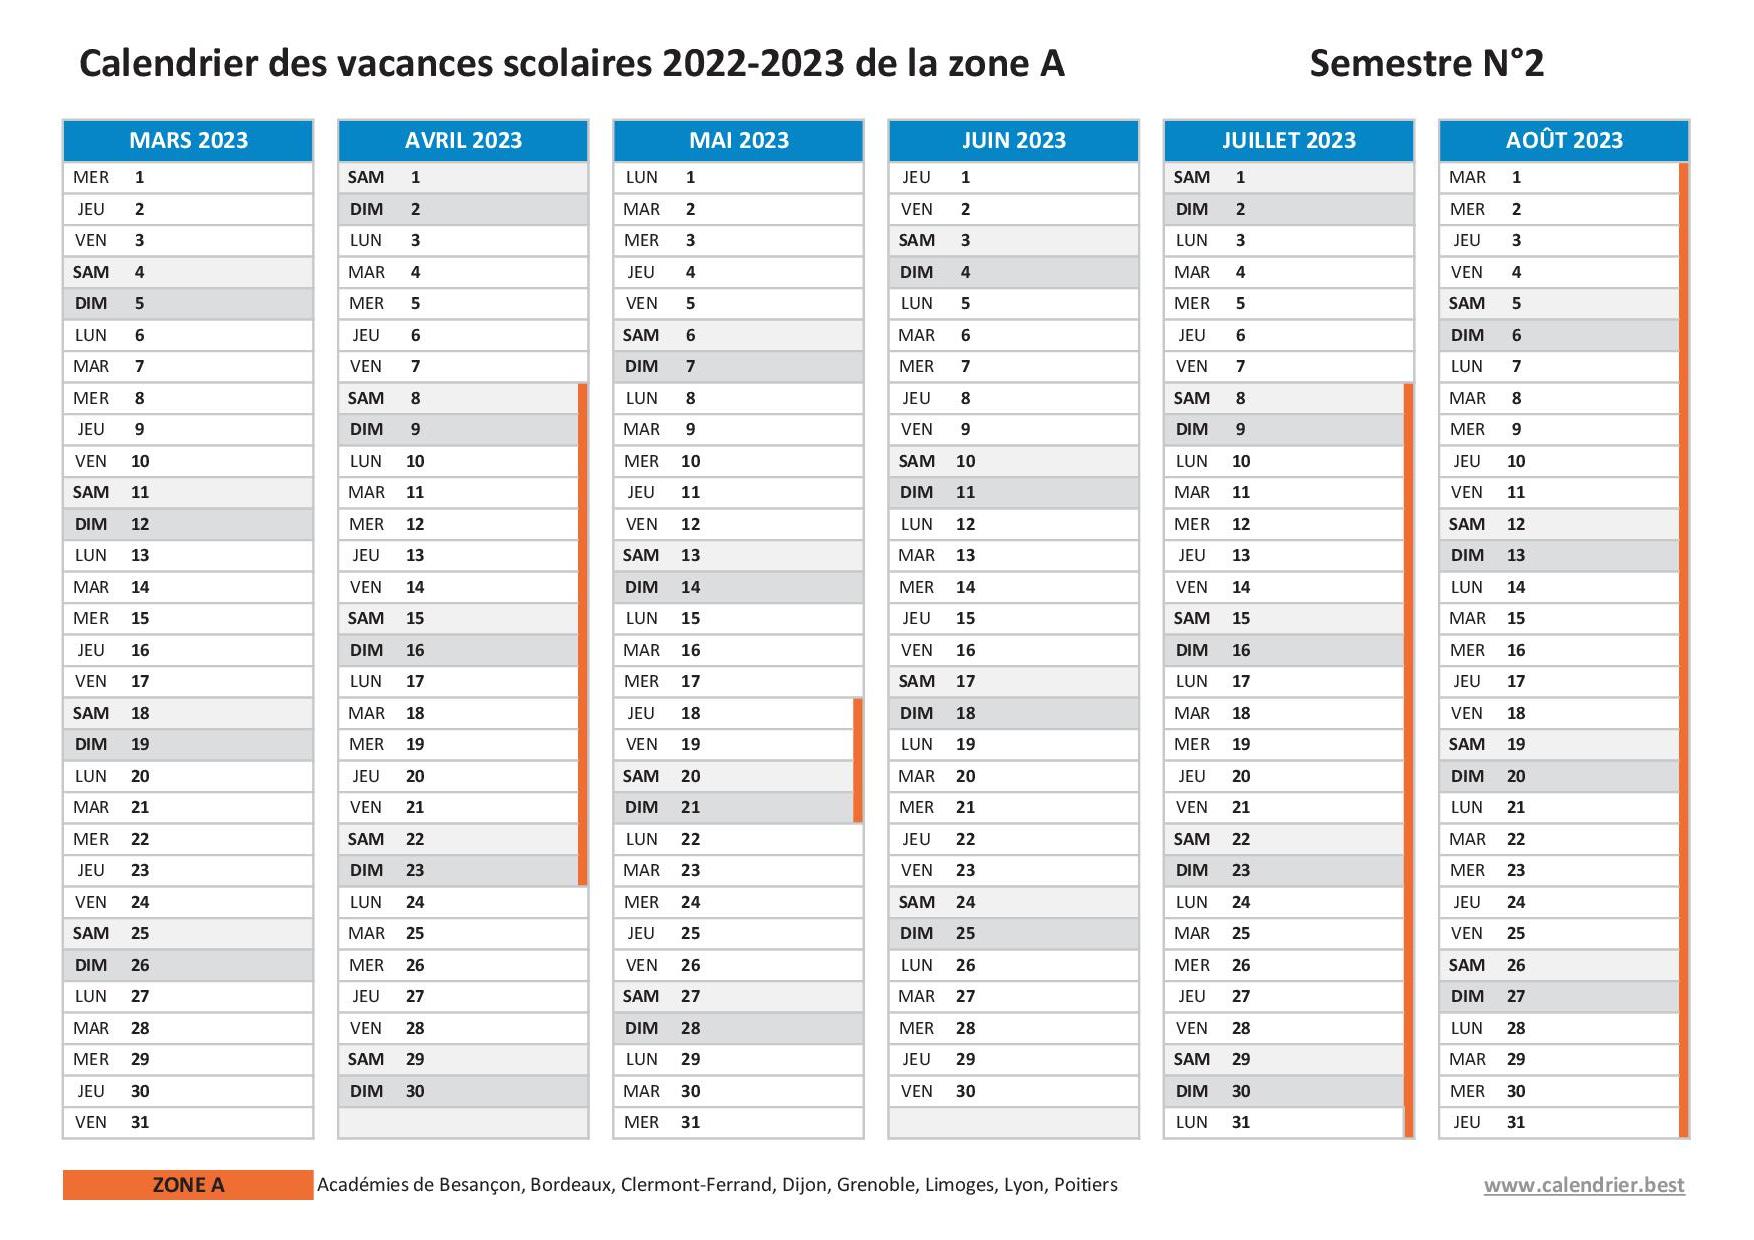 Vacances scolaires 2022-2023 ZONE A - Calendrier scolaire 2022-2023 de la  zone A à imprimer